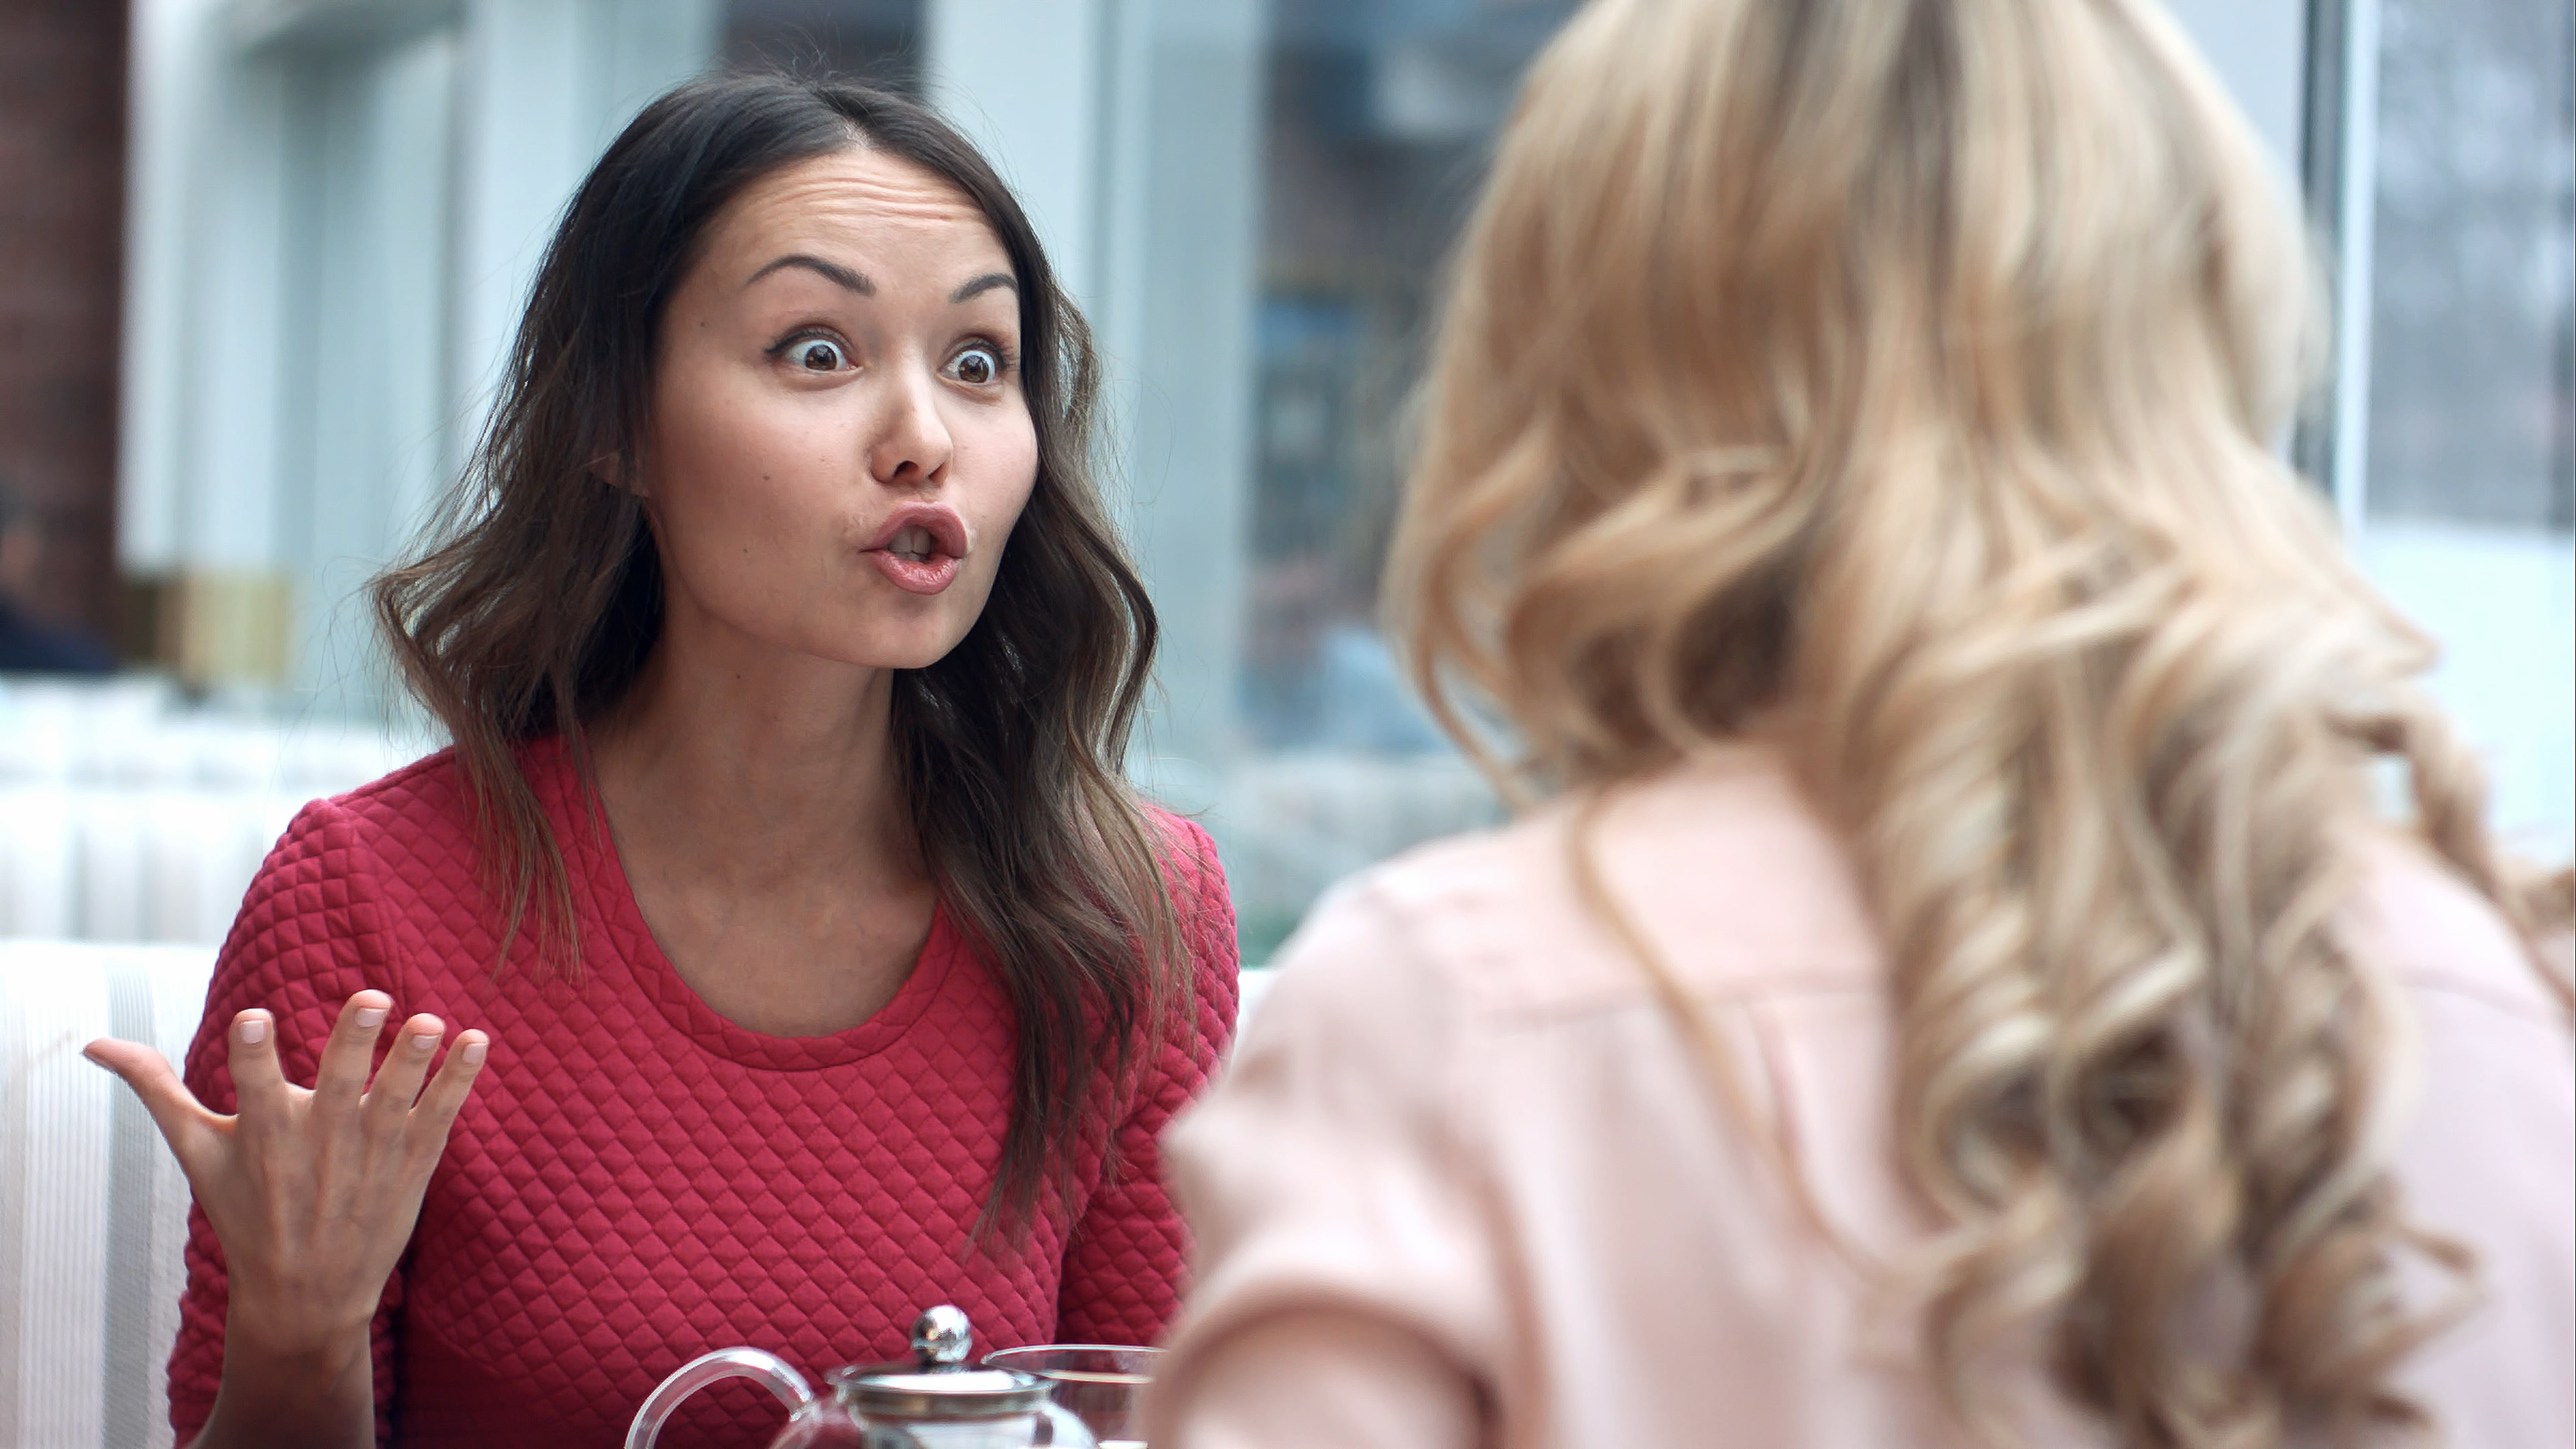 Deux jeunes femmes se disputent dans un restaurant | Source : Shutterstock